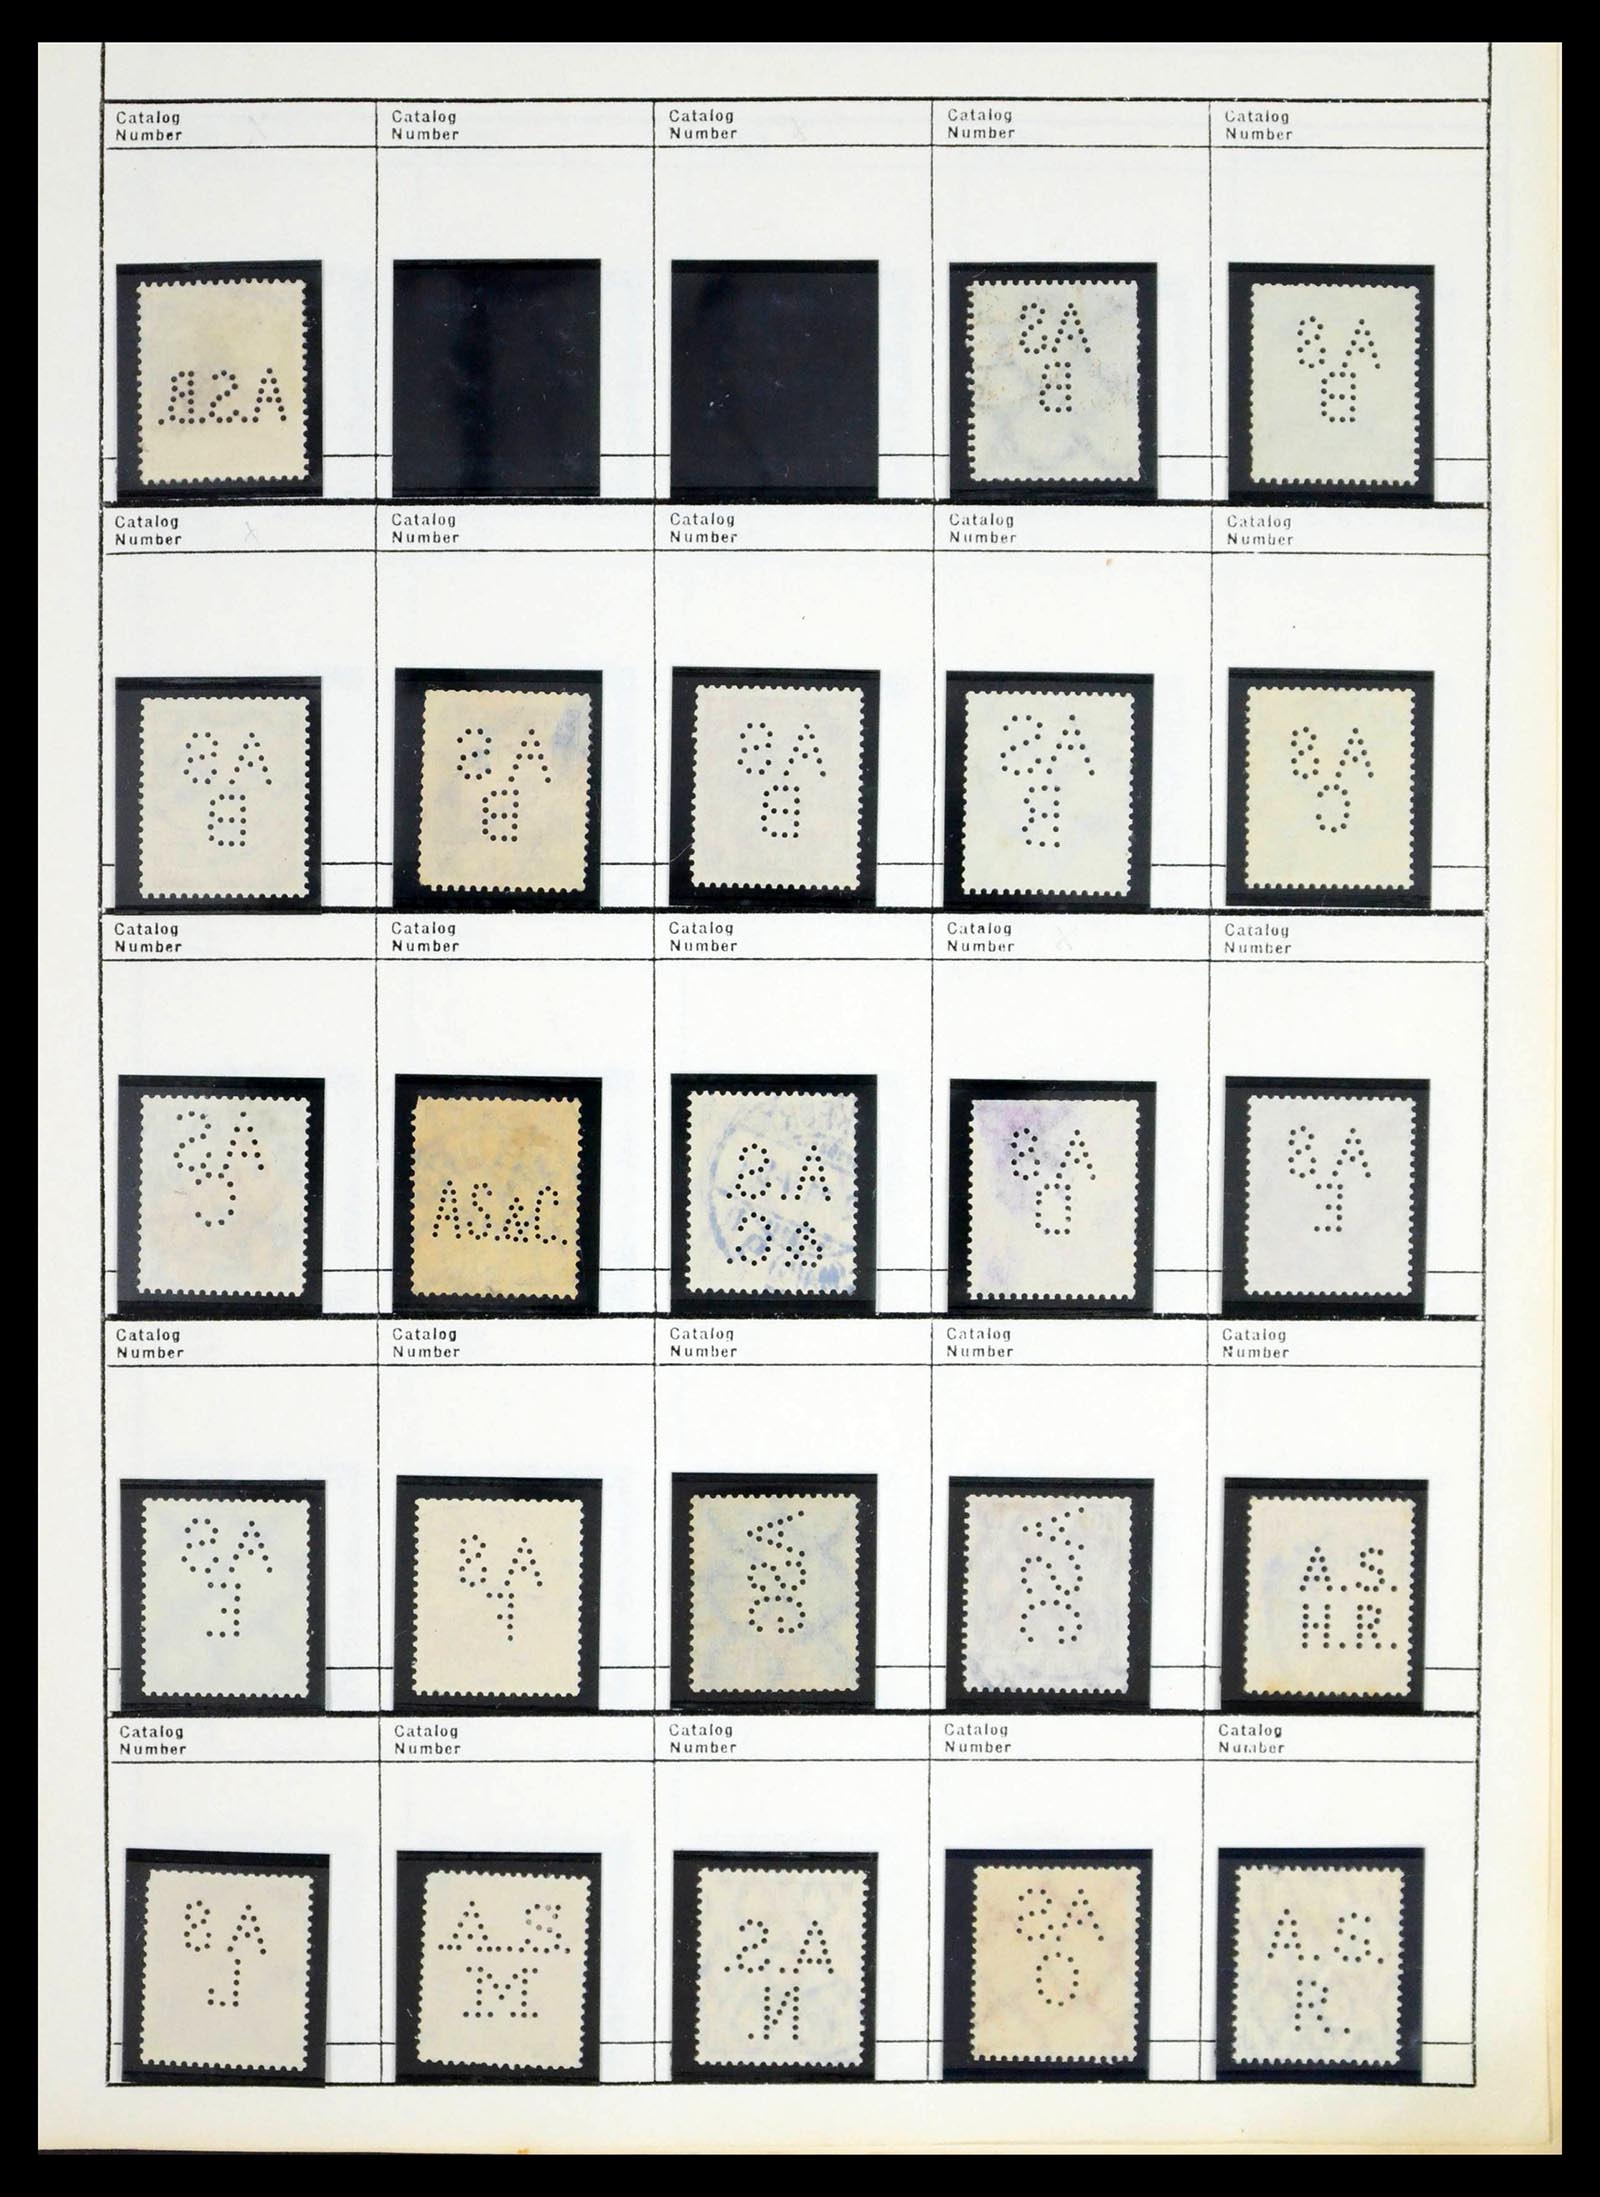 39480 0041 - Stamp collection 39480 German Reich perfins 1880-1955.